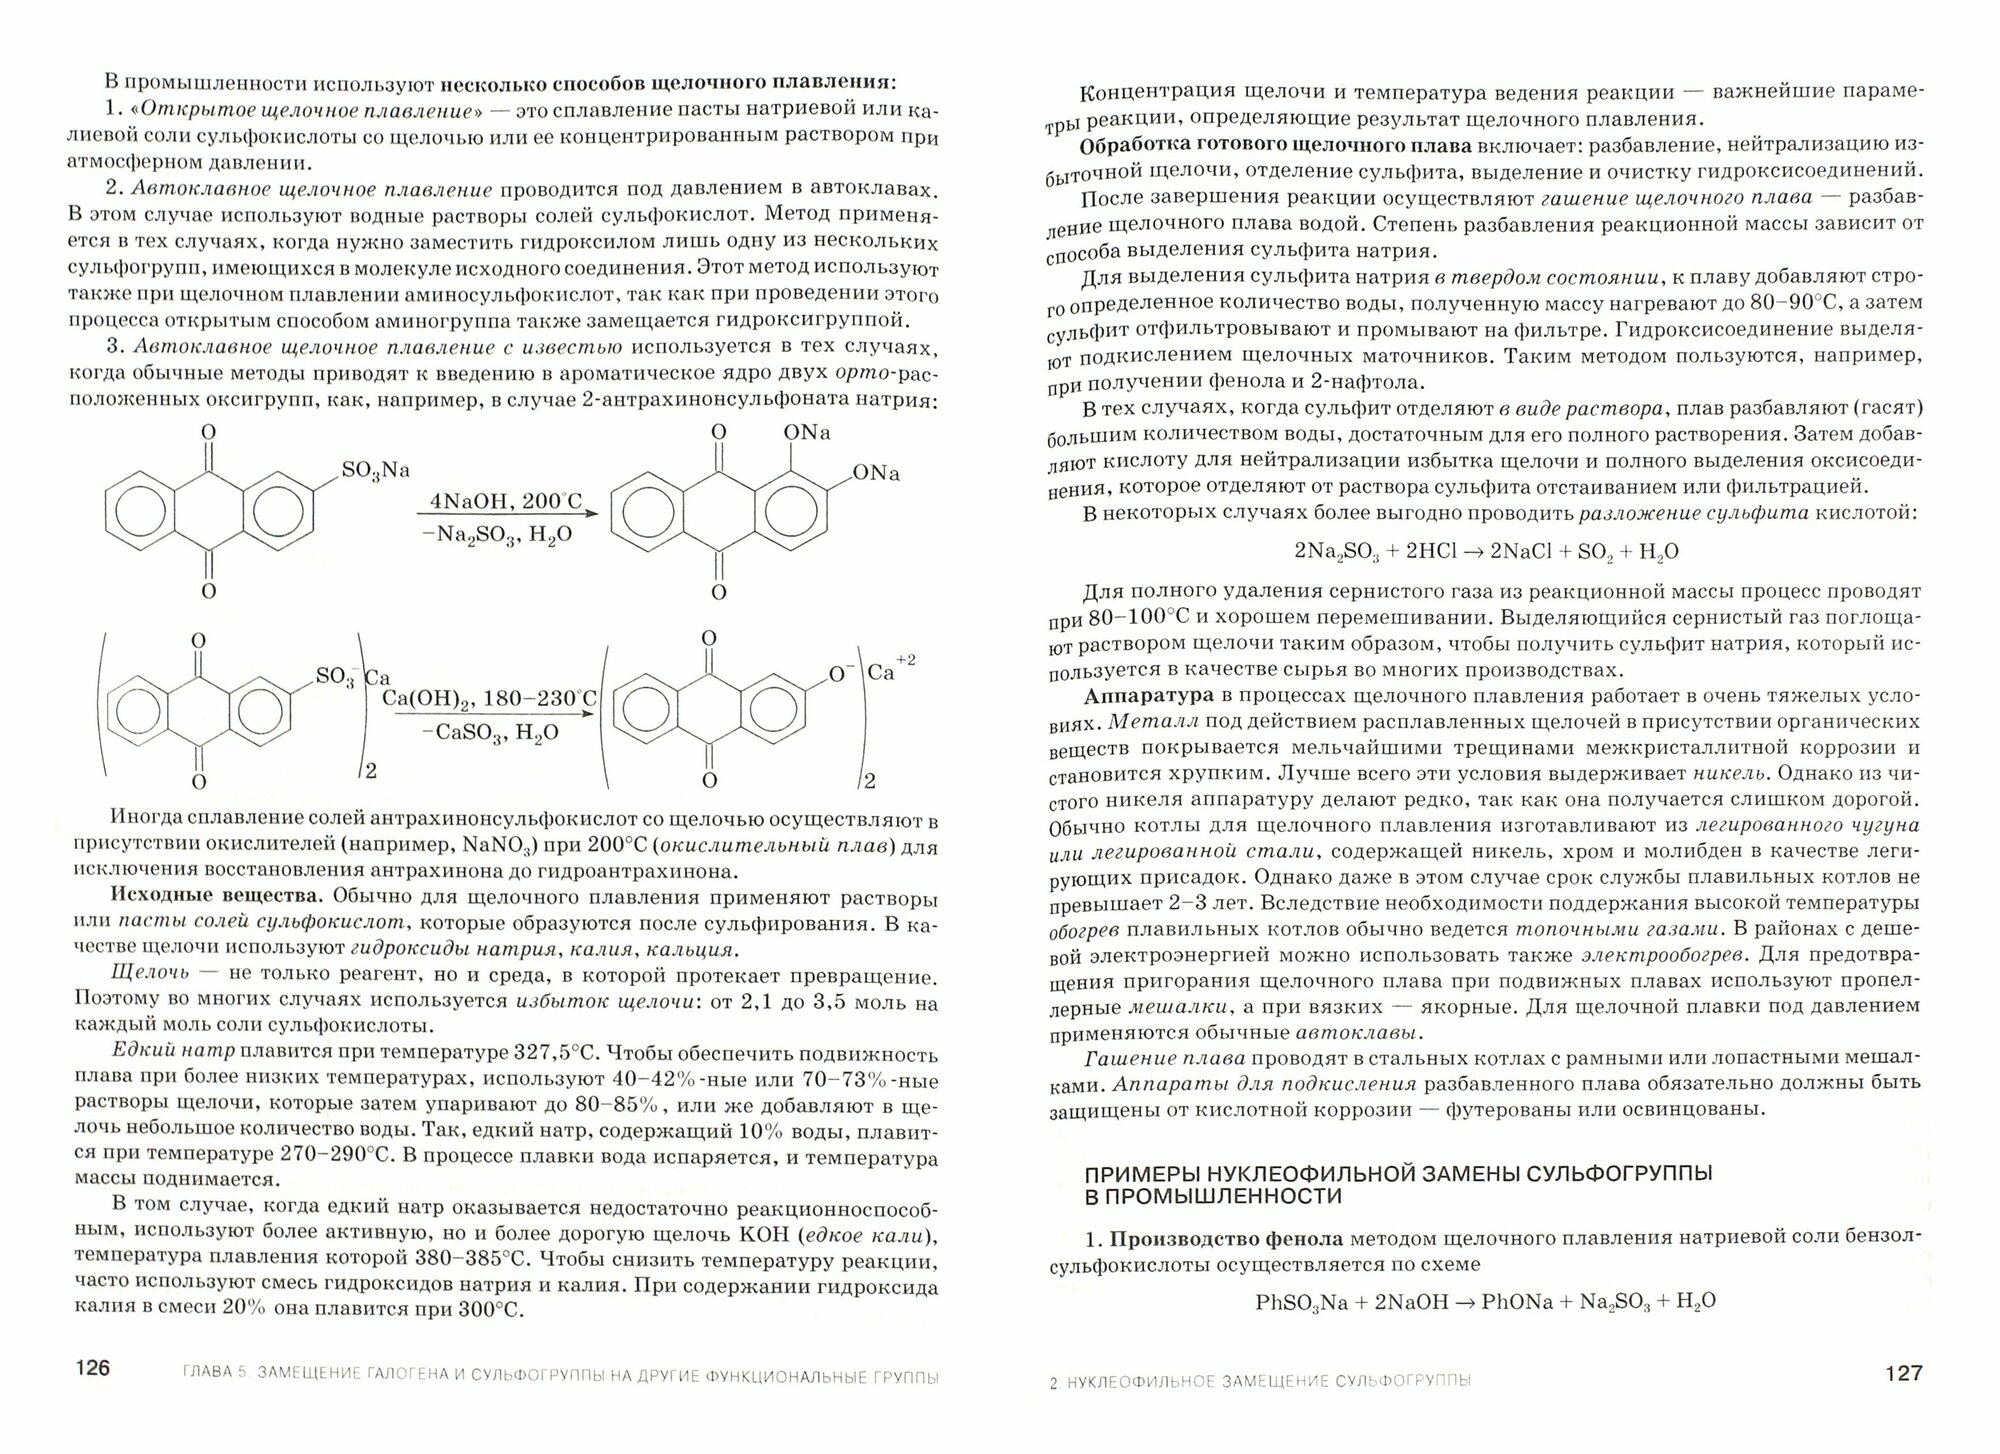 Химическая технология лекарственных веществ. Учебное пособие - фото №4